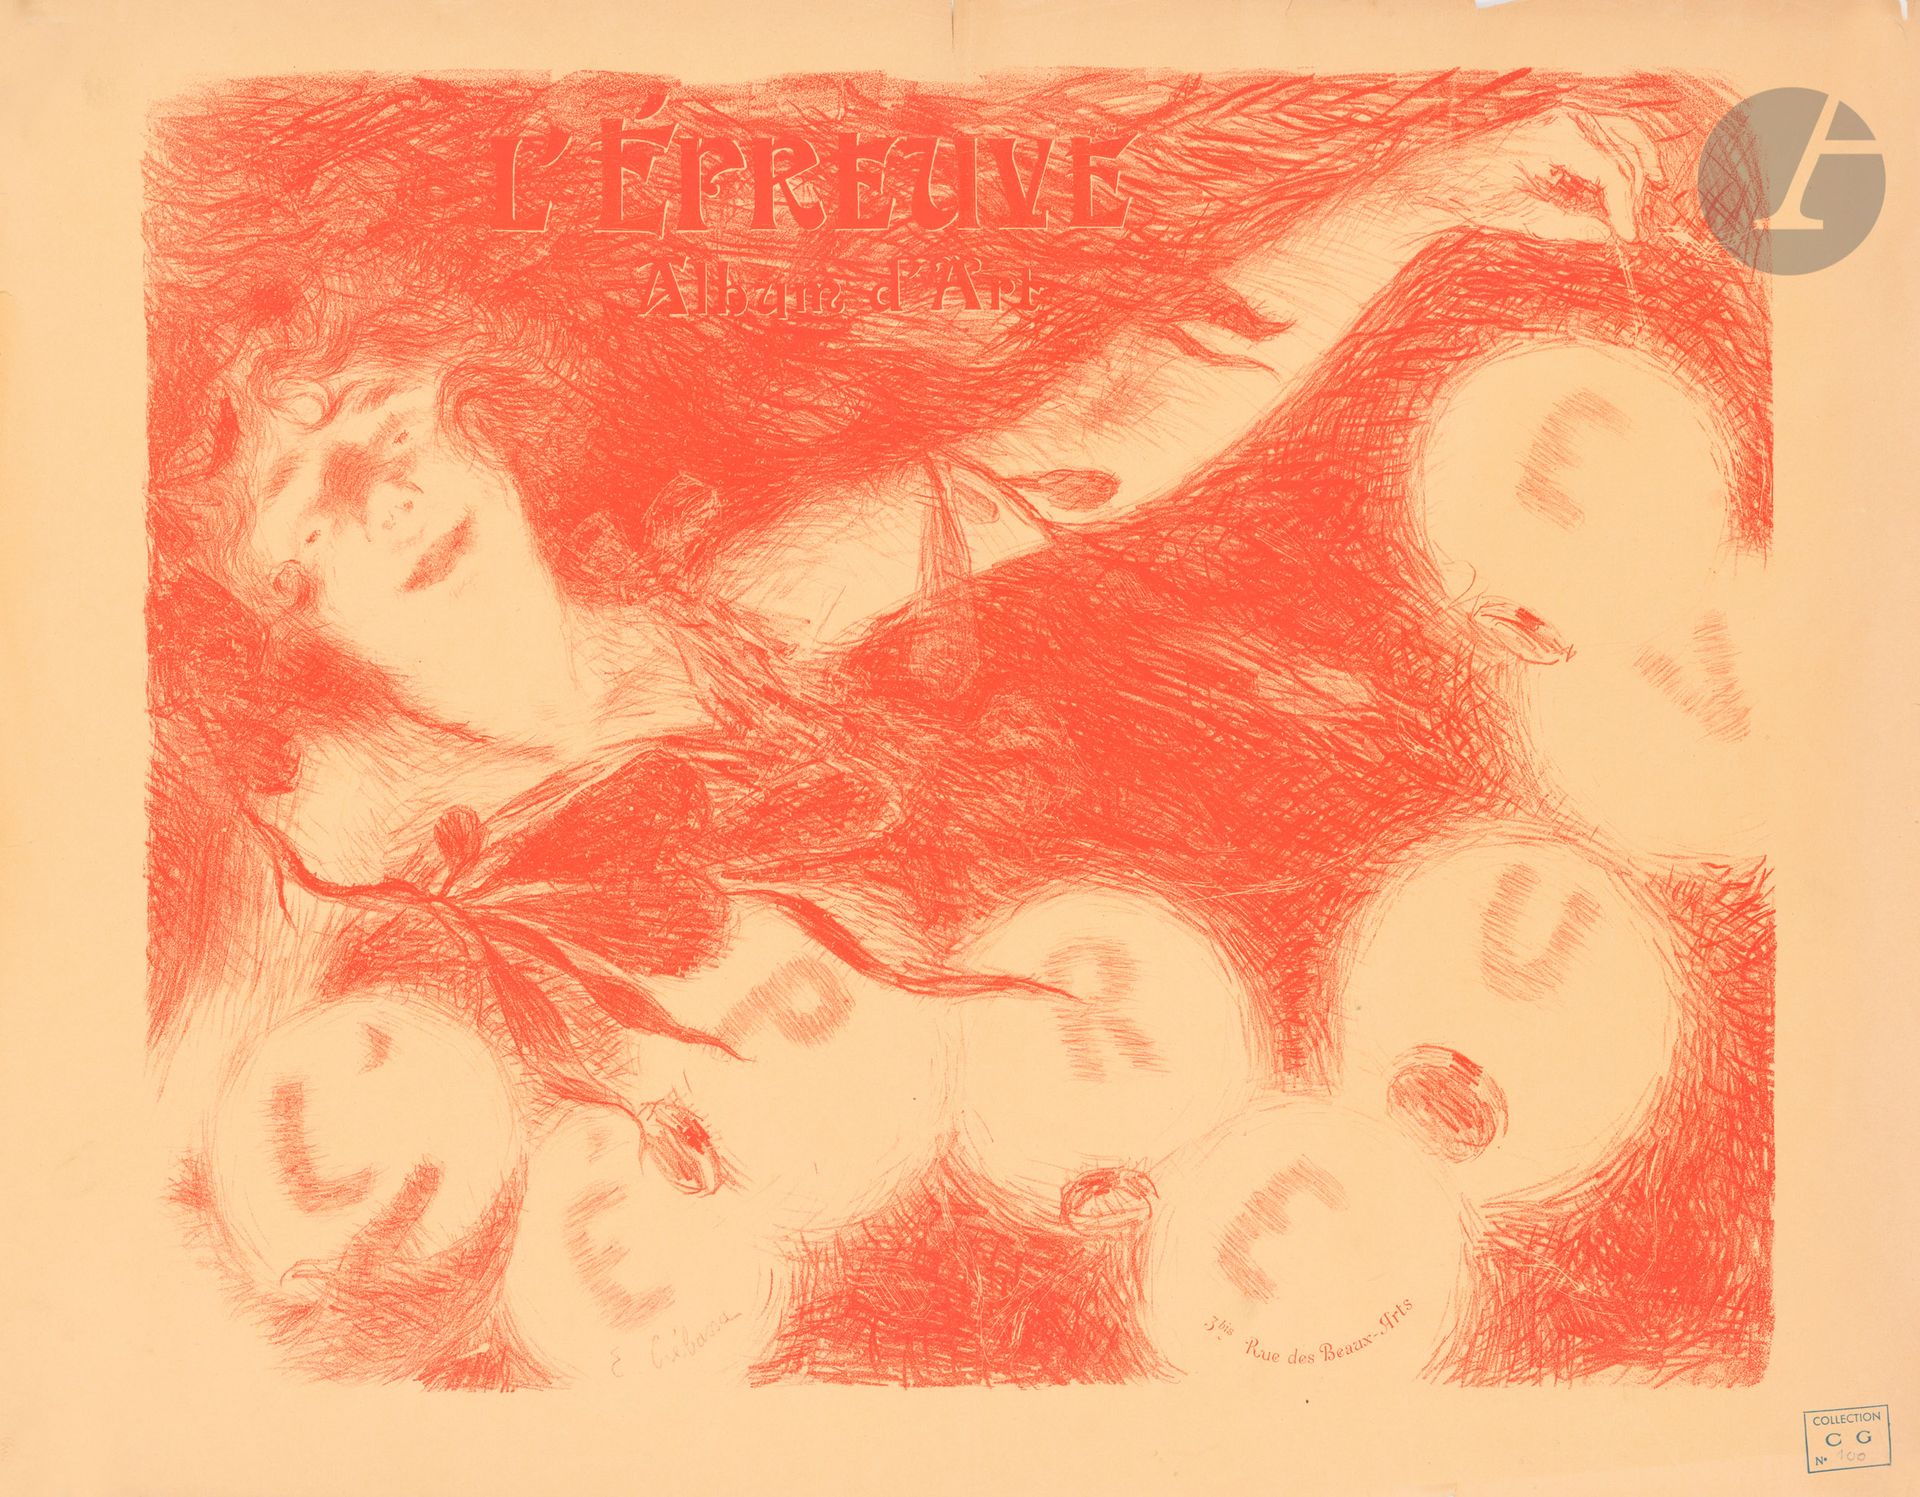 Null 爱德华-克雷巴斯(1870-1912
)《证明》，1896石版画
，红色单色证明。没有得到支持。
 
左下方有签名
。

状况良好。边缘有泪痕。
65&hellip;